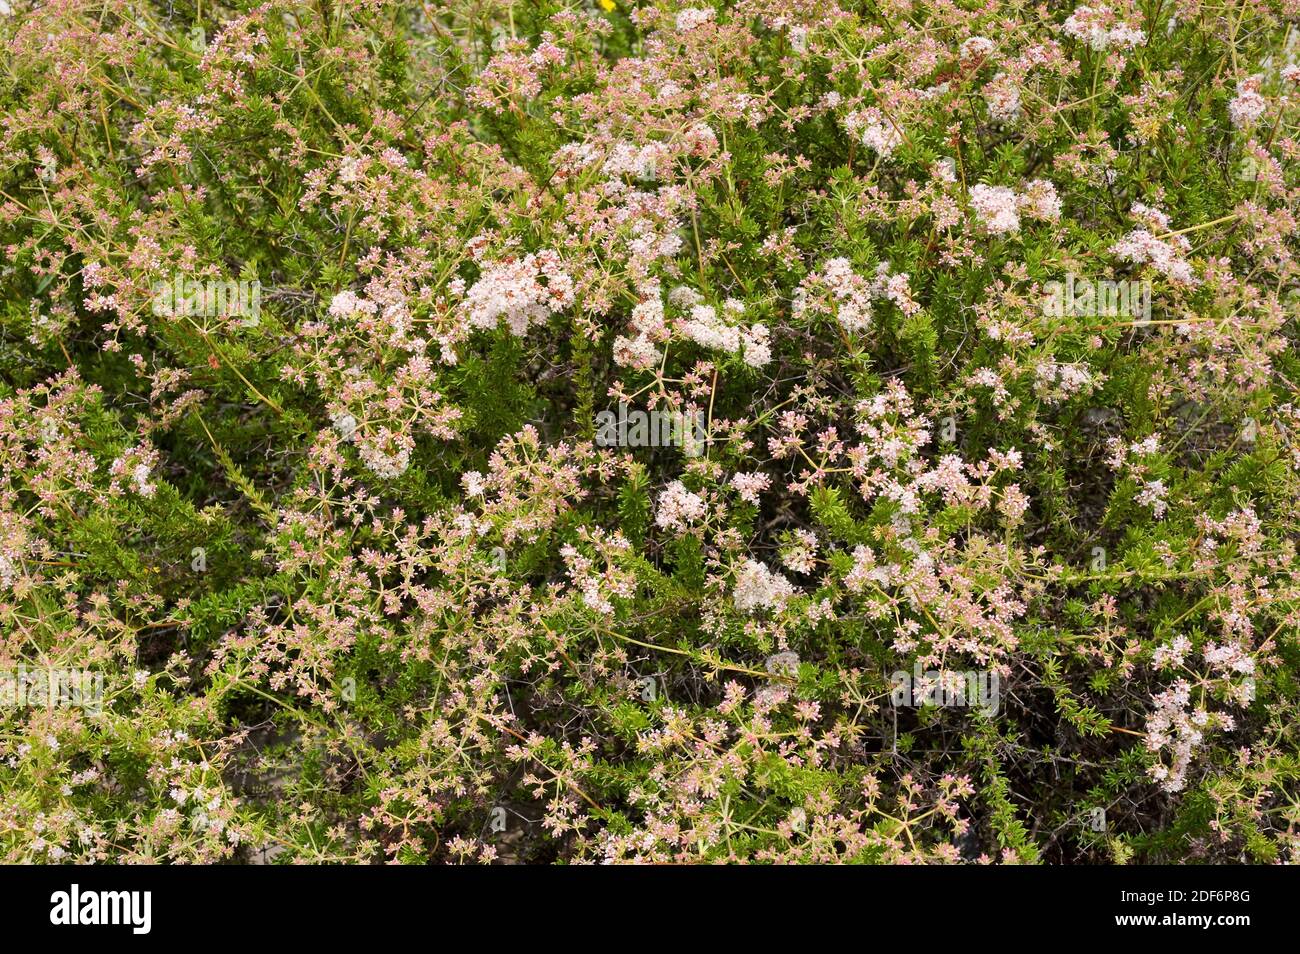 Le sarrasin de Californie ou sarrasin de Mojave (Eriogon fasciculatum) est un arbuste originaire du sud-ouest des États-Unis et du nord-ouest du Mexique. Banque D'Images